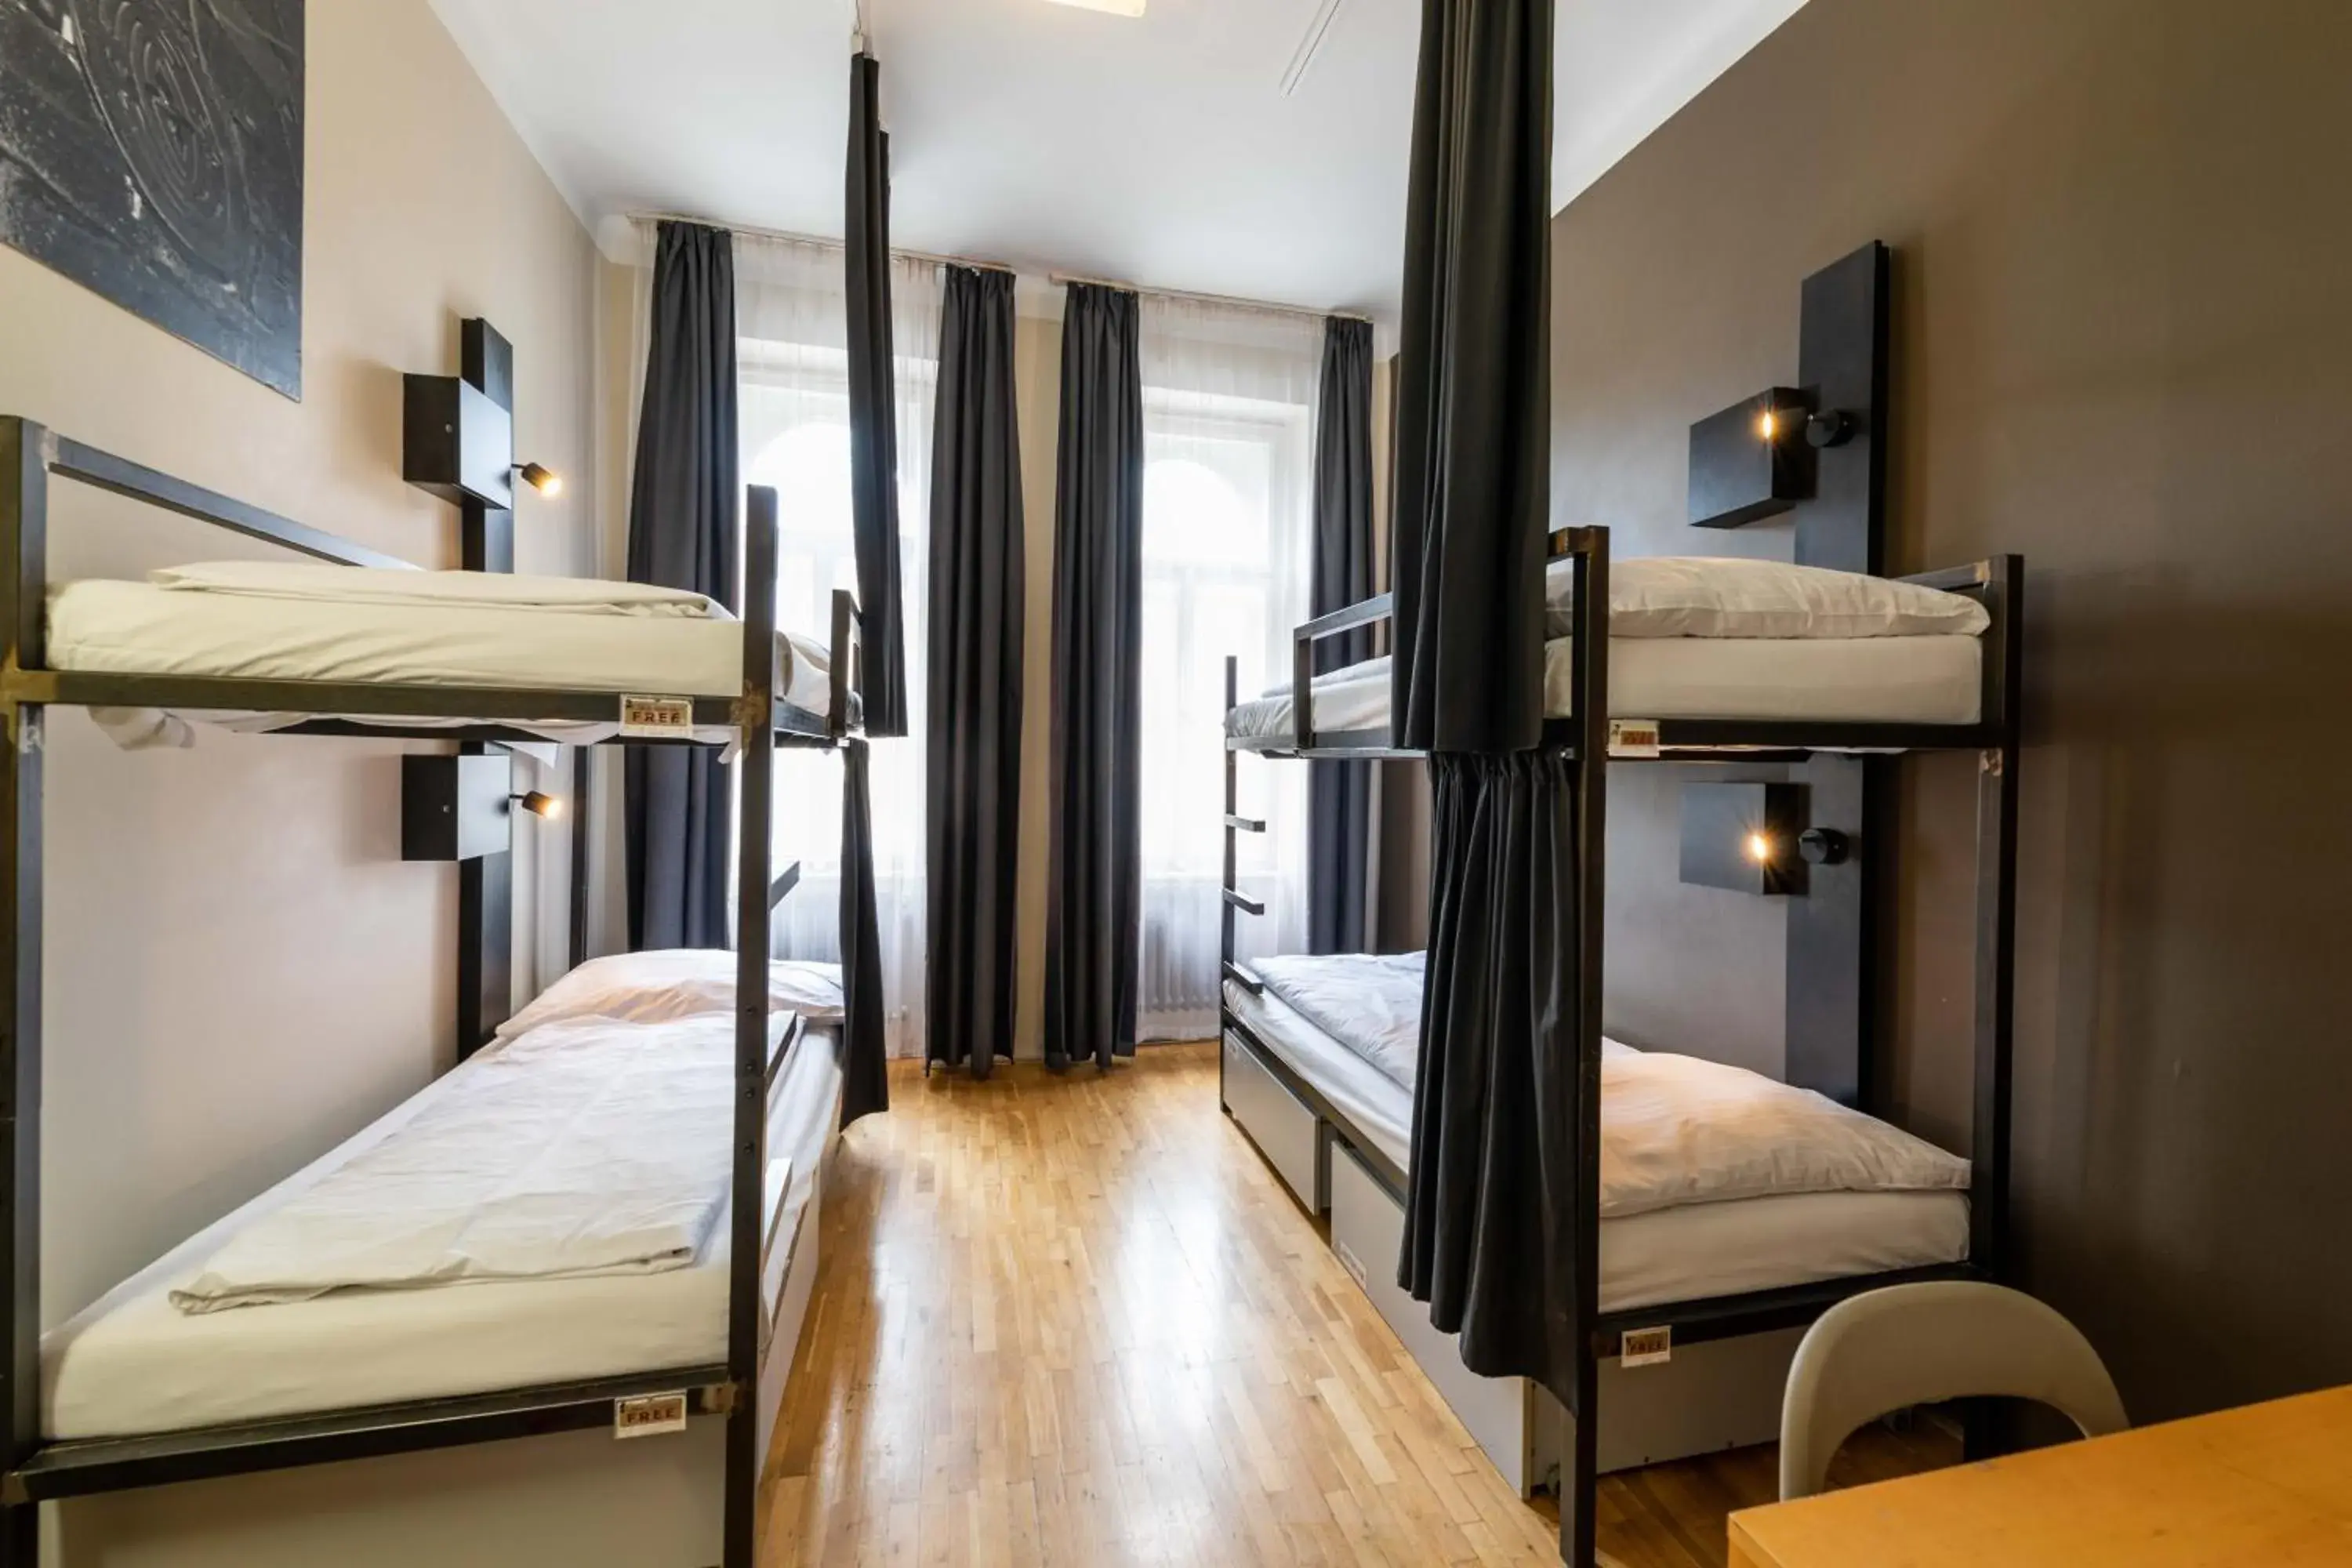 Bedroom, Bunk Bed in Czech Inn Hostel